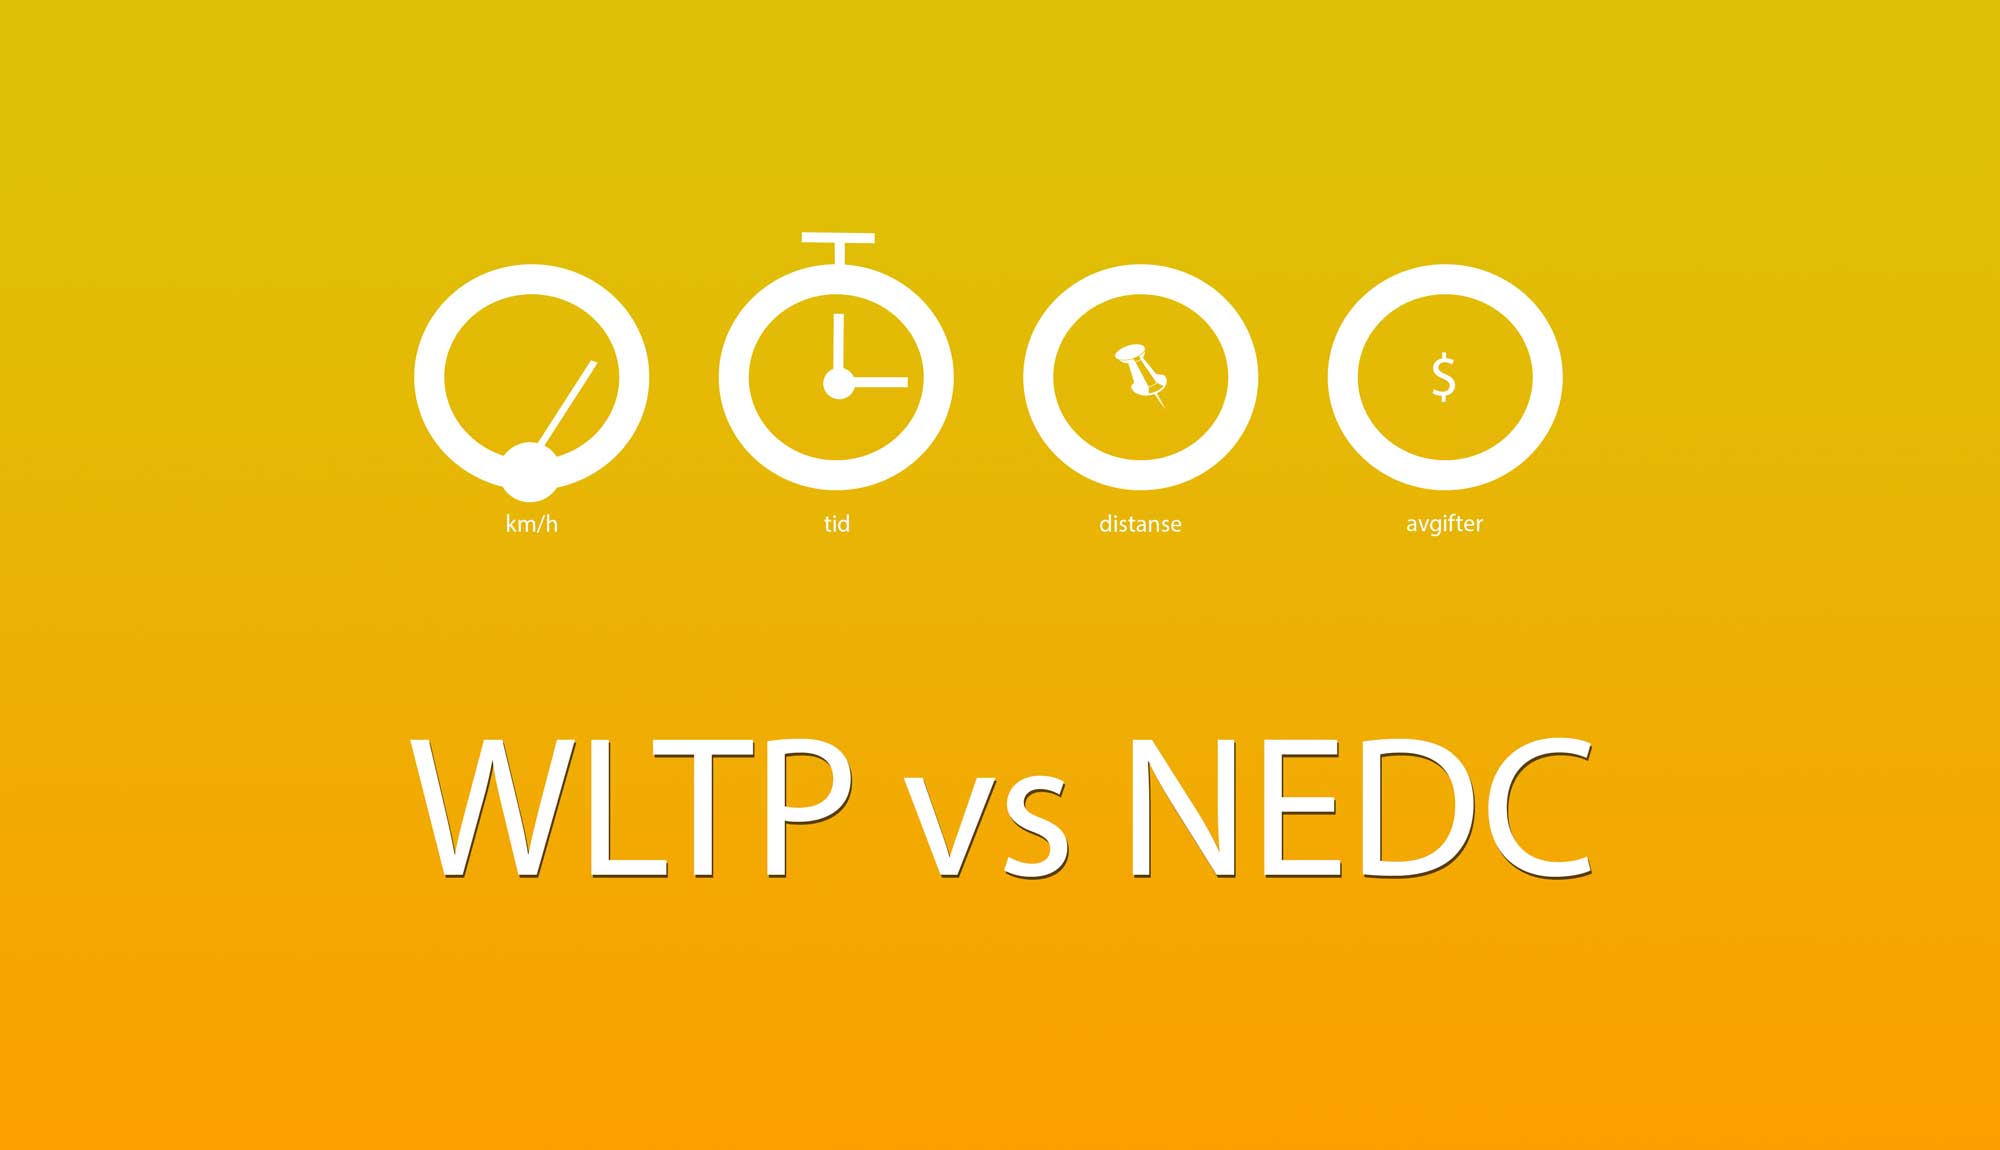 WLTP vs NEDC